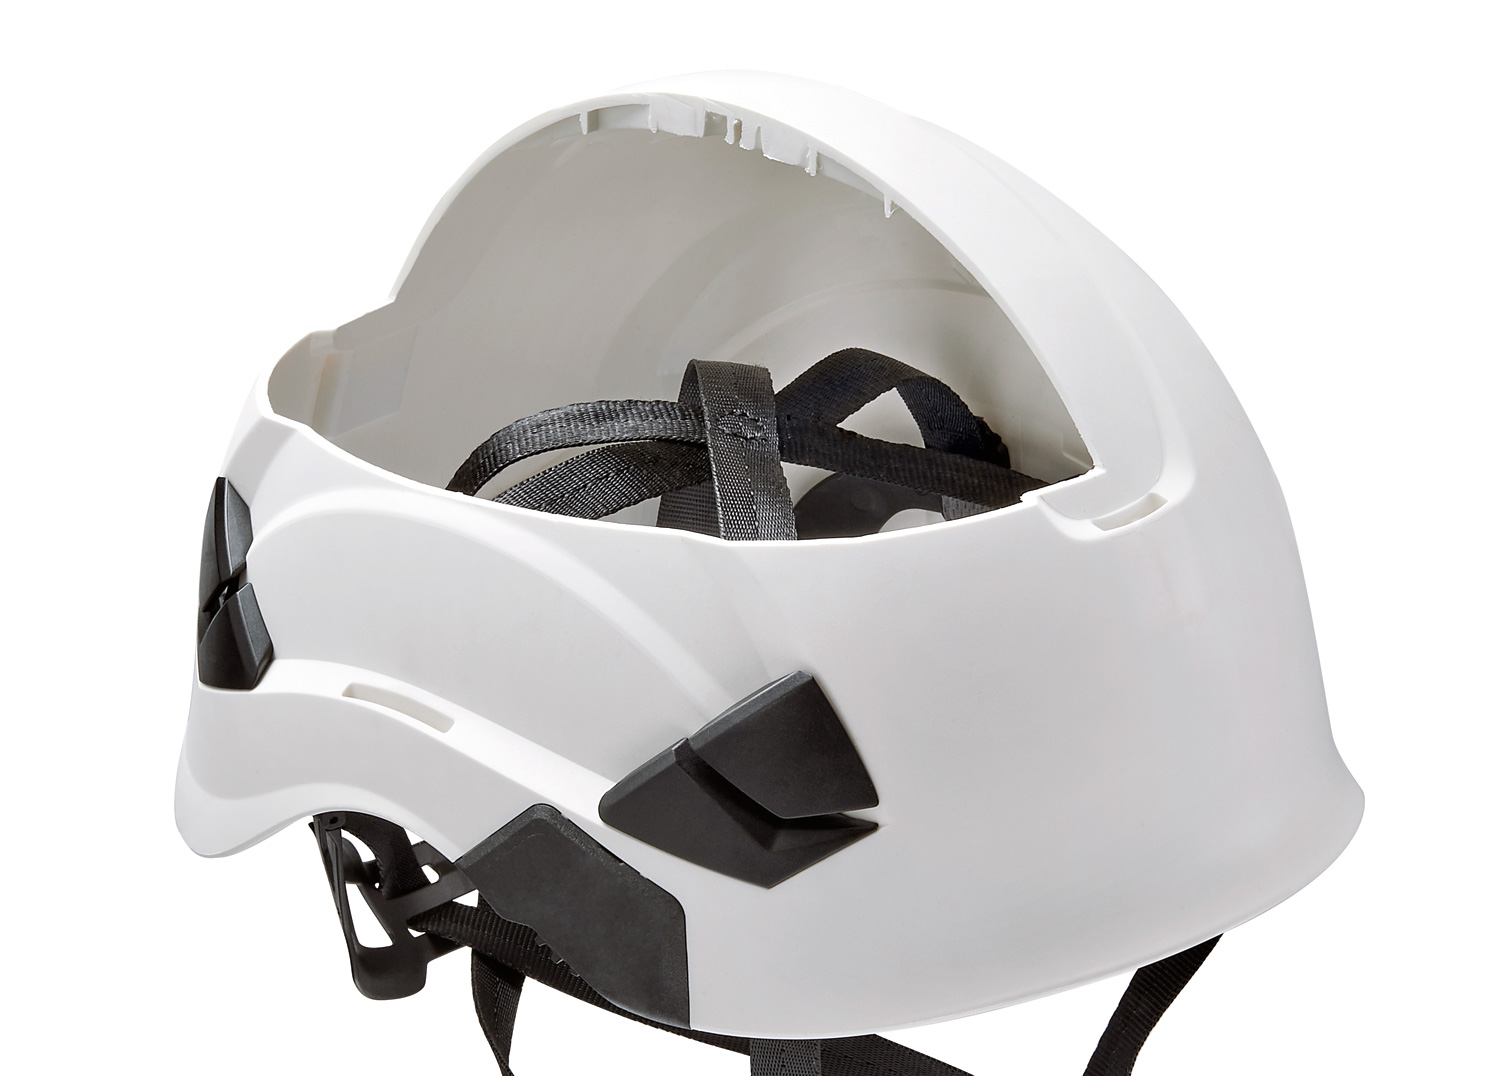 Petzl Pro Alveo Best Professional Helmet